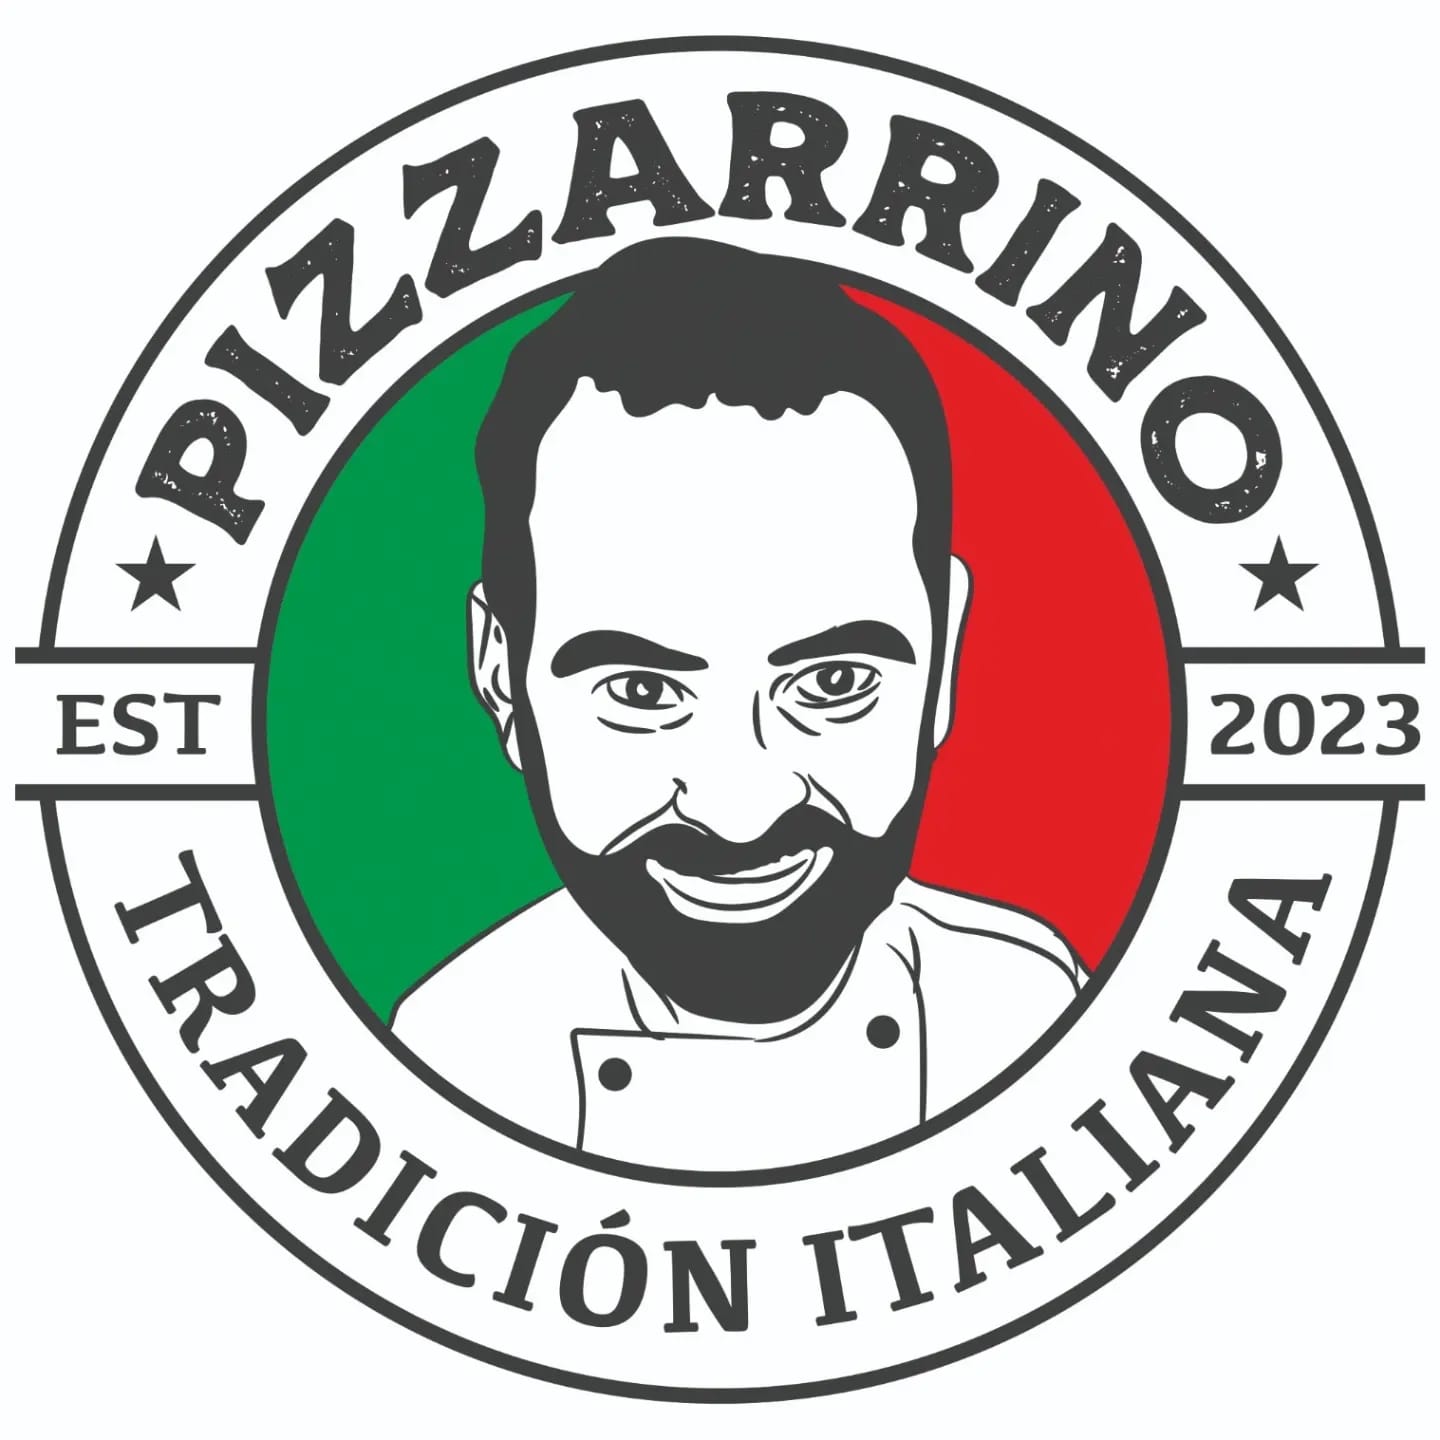 Gastronomia Mazzarrino